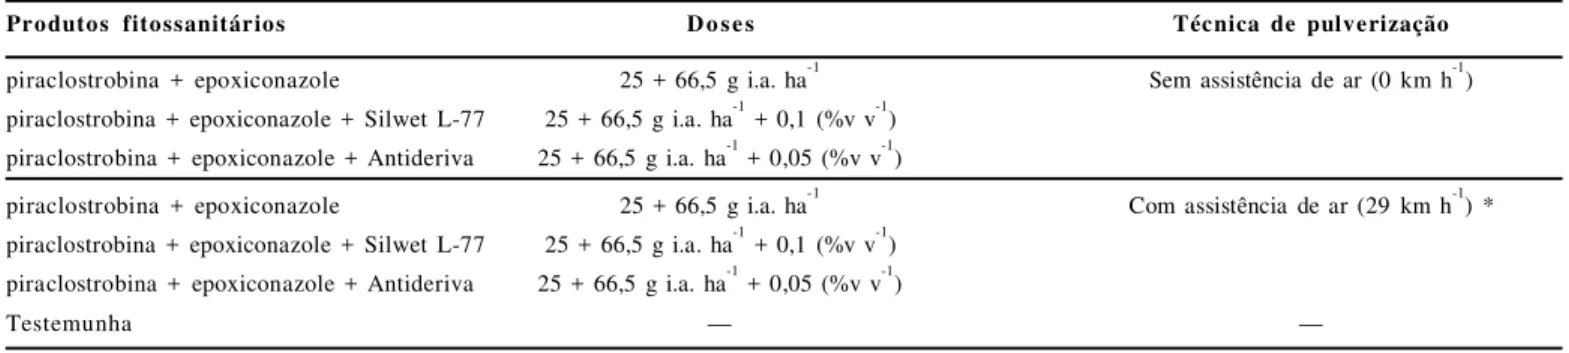 Tabela  3.  Condições  meteorológicas  durante  as  pulverizações  da  mistura  fungicida  piraclostrobina  +  epoxiconazole  para  o  controle  da  Phakopsora pachyrhizi